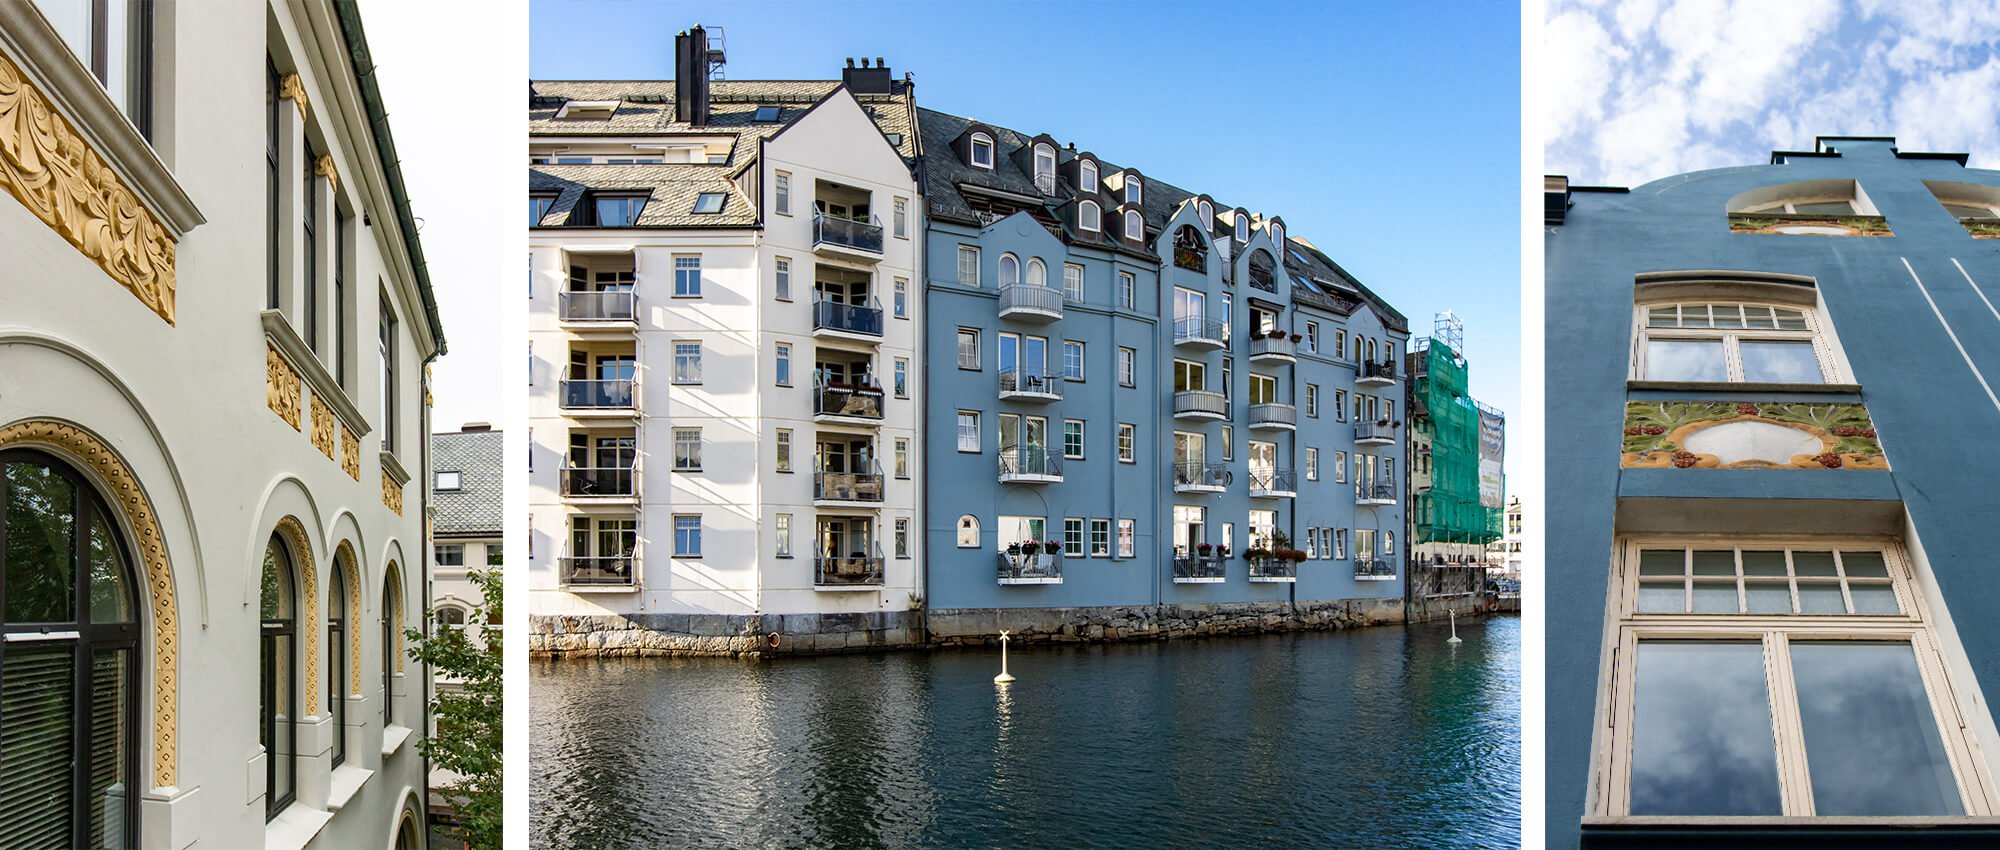 Workation in Norwegen mit Halt in Jugendstilbauten in Ålesund mit verschiedenen Farben und Details